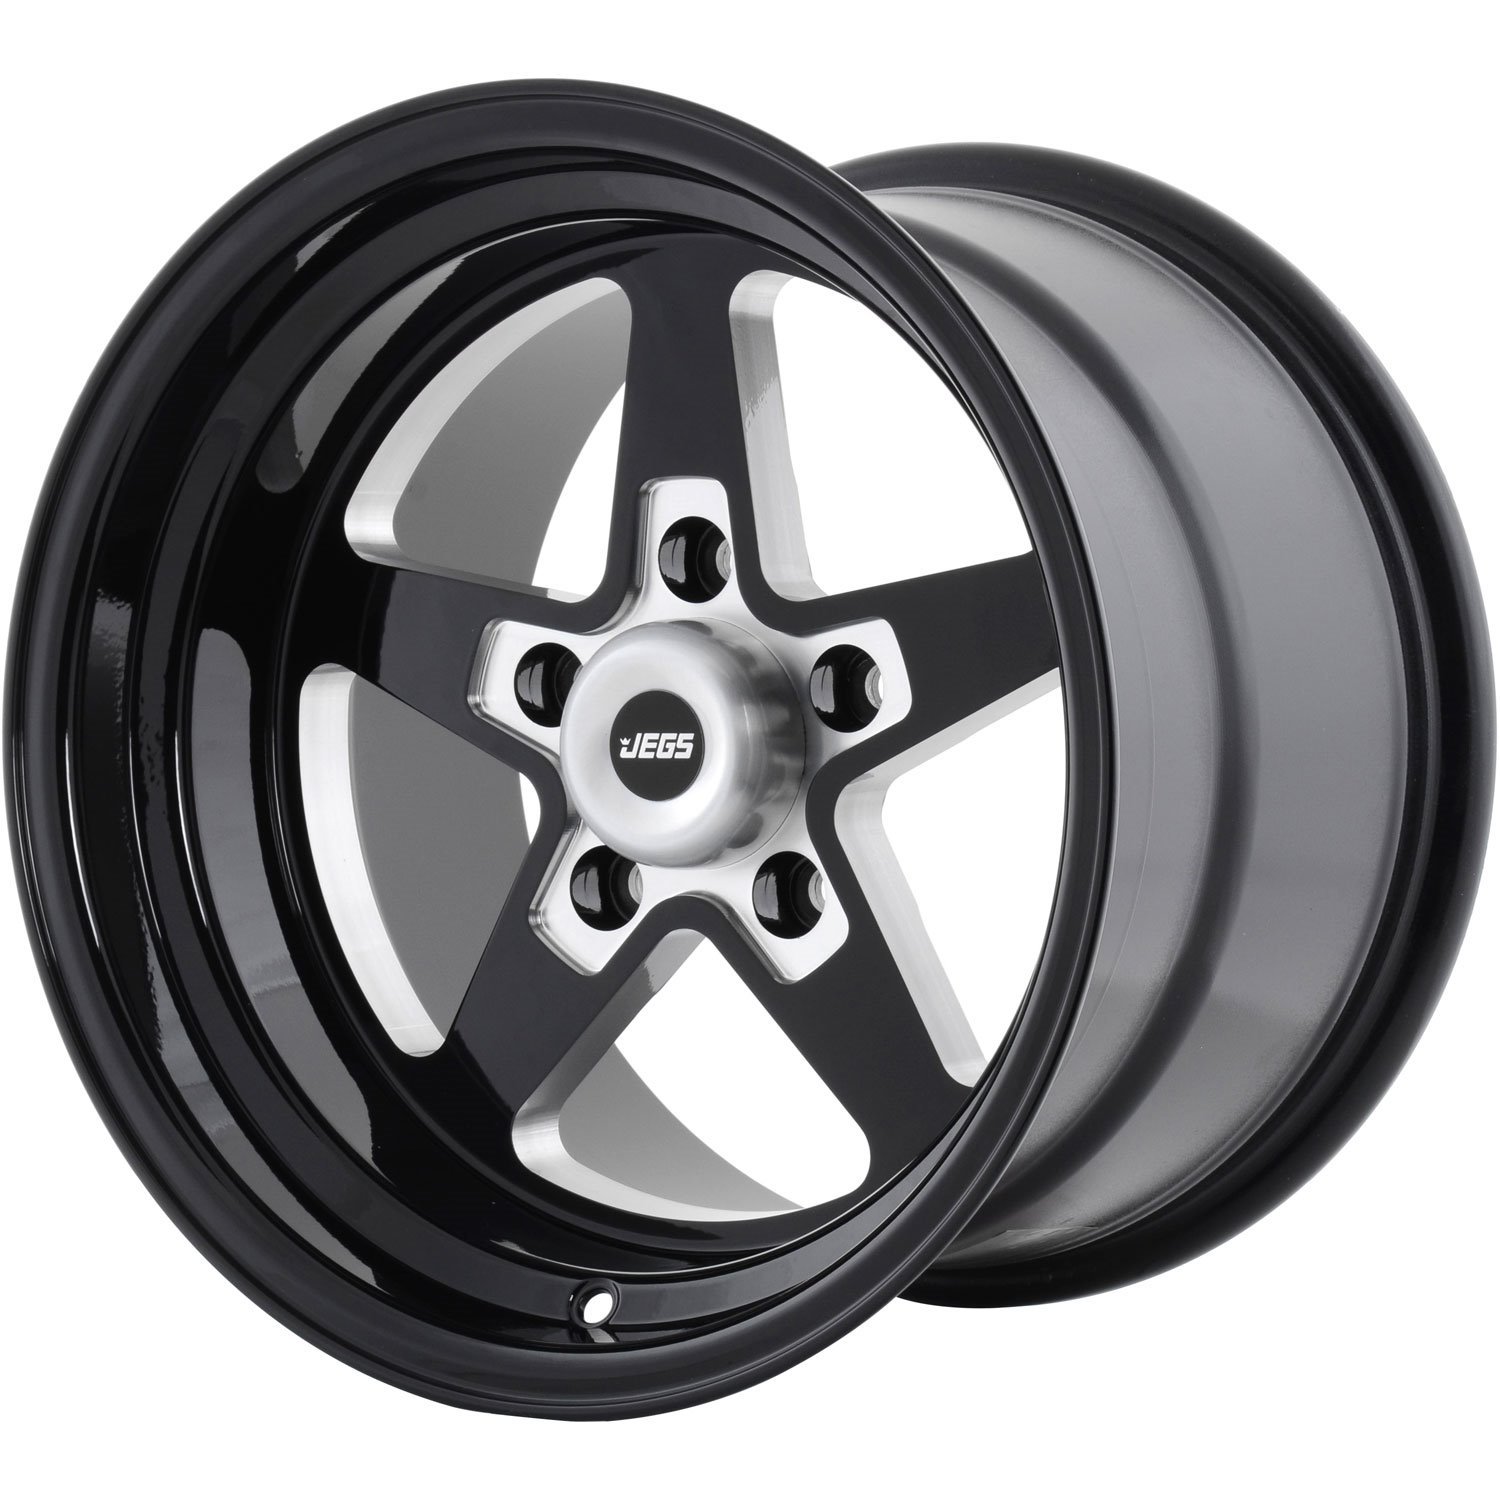 SSR Star Wheel [Size: 15" x 10"] Gloss Black